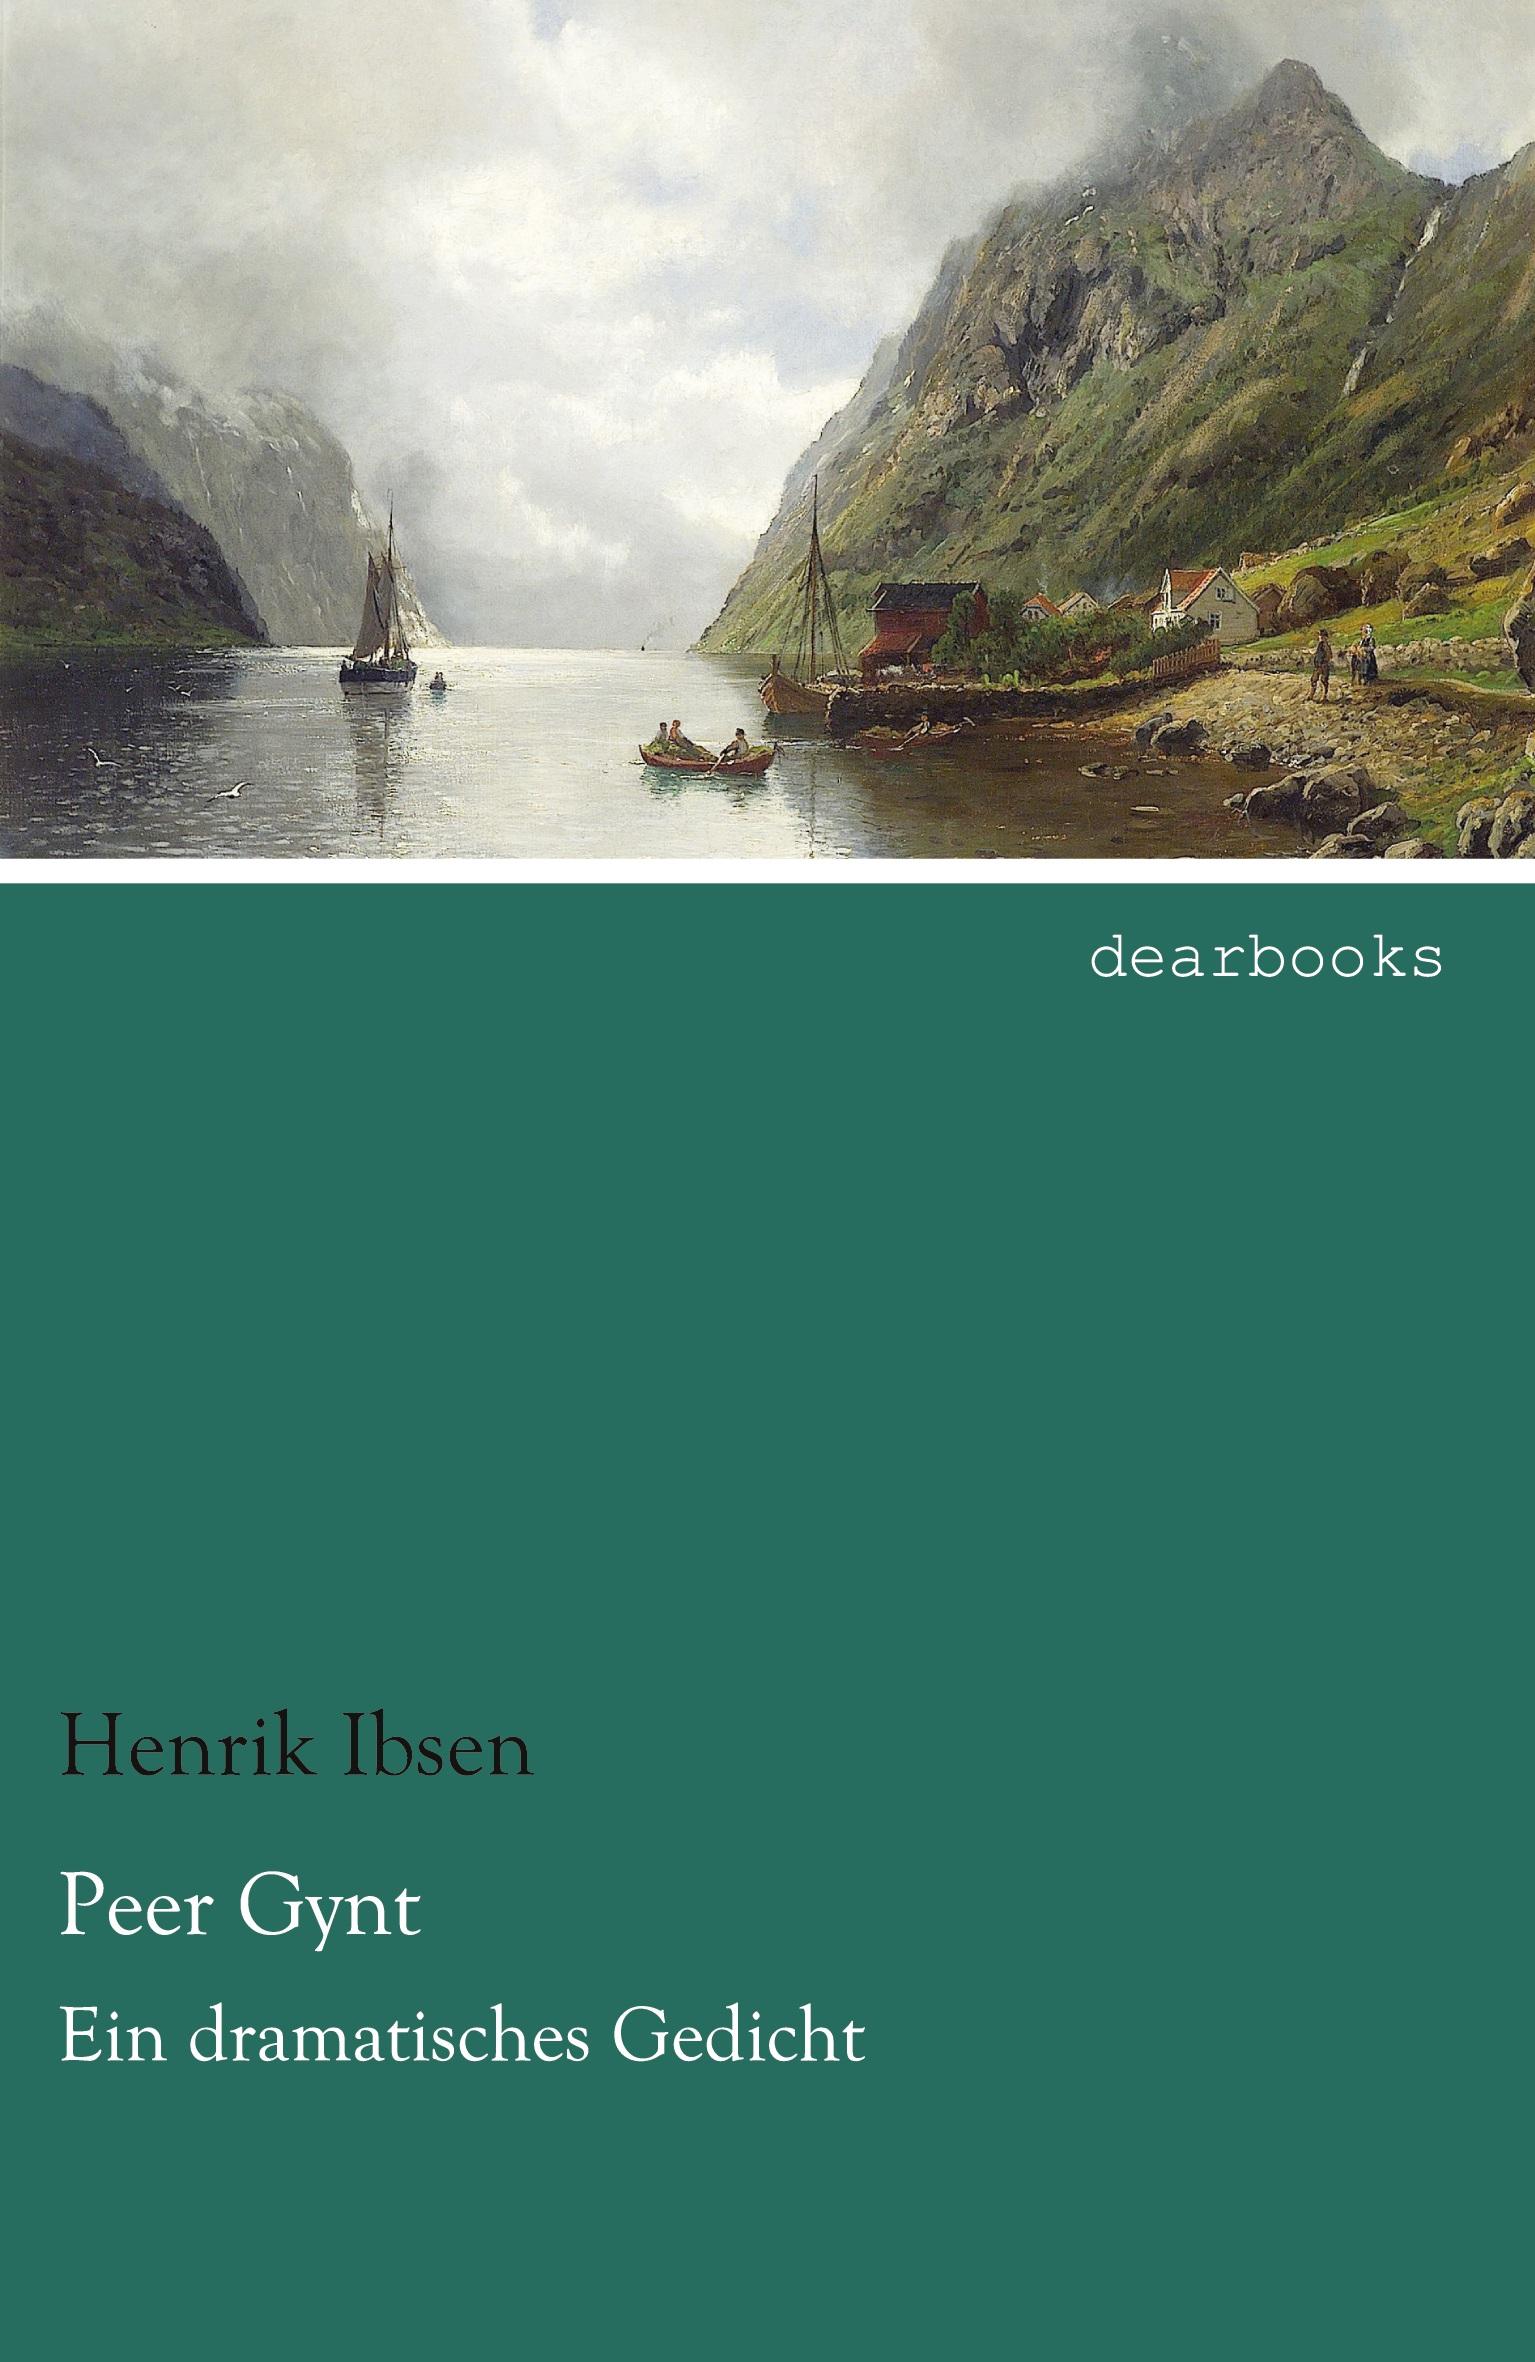 Peer Gynt / Ein dramatisches Gedicht / Henrik Ibsen / Taschenbuch / Paperback / 216 S. / Deutsch / 2021 / dearbooks / EAN 9783954558742 - Ibsen, Henrik